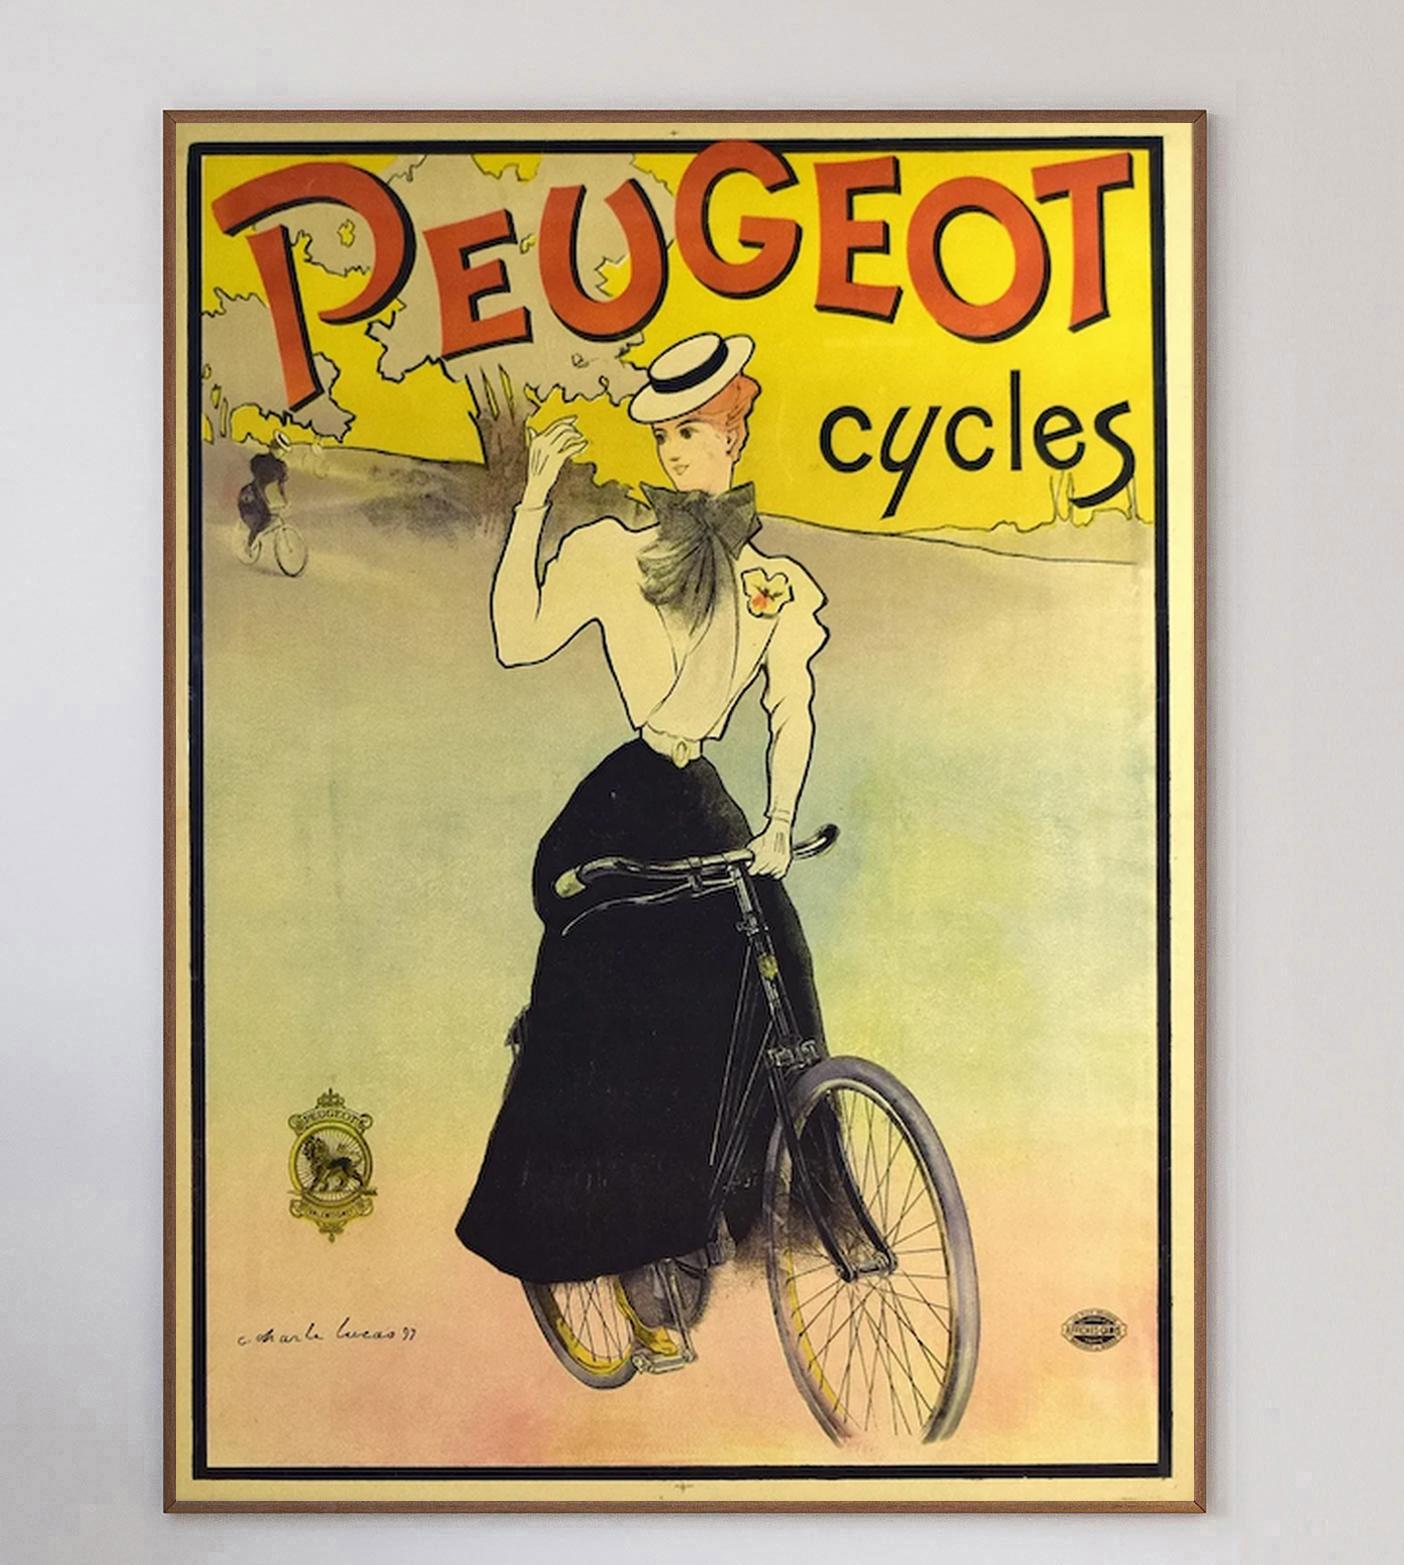 Superbe affiche lithographique originale pour Peugeot Cycles par l'artiste Charles Lucas. Imprimé à l'origine en 1897 par l'Imprimerie Camis en France. L'œuvre d'art représente une femme sur une bicyclette, surmontée d'un texte jaune et rouge